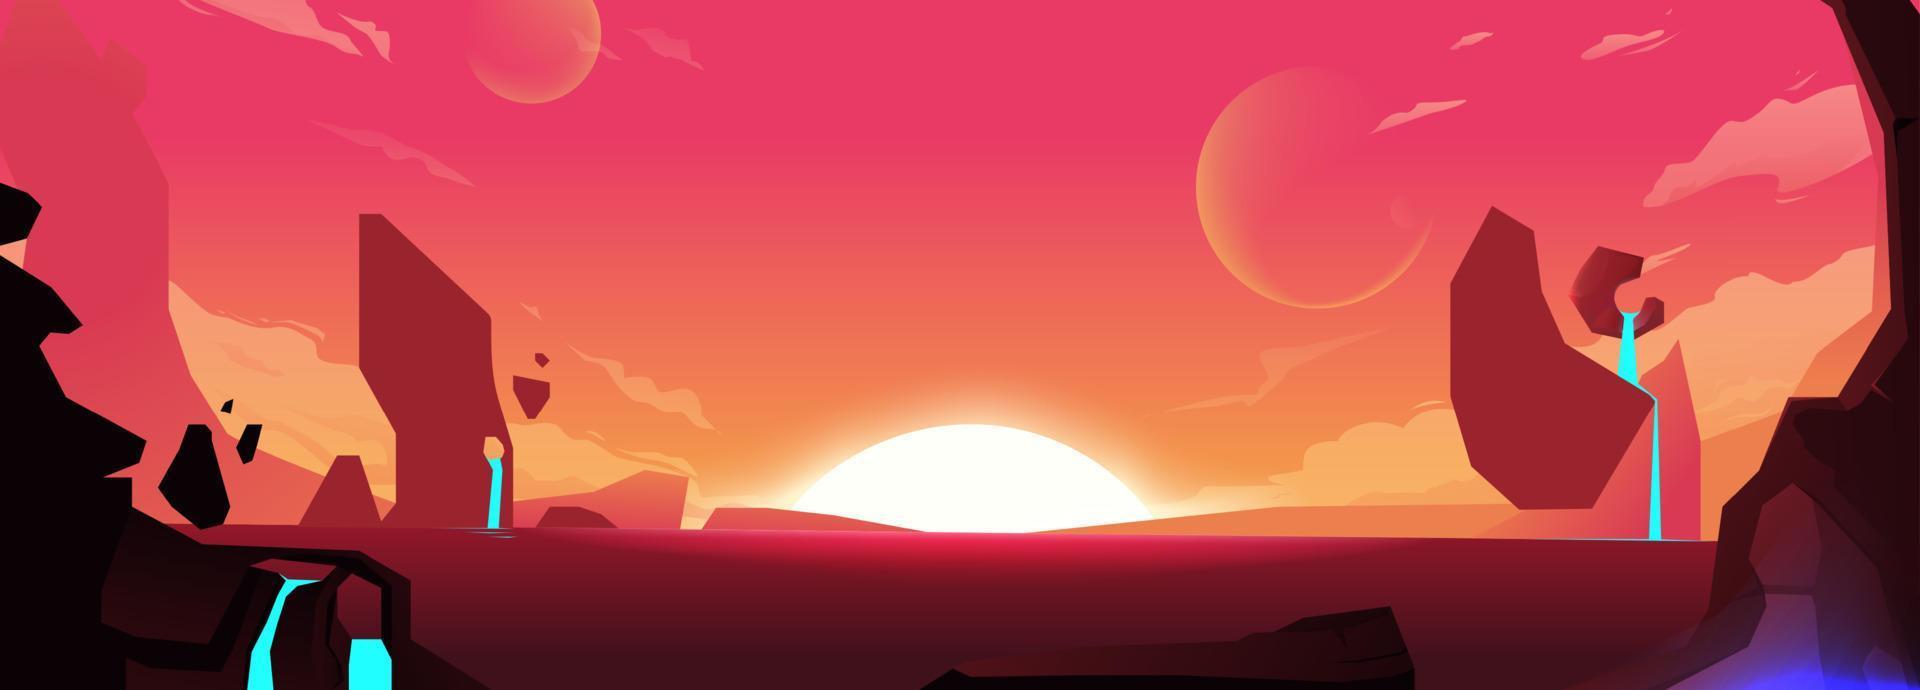 bakgrund med röd planet och berg med vatten. gryning i rymden, solen vid horisonten. tecknad vektorillustration vektor